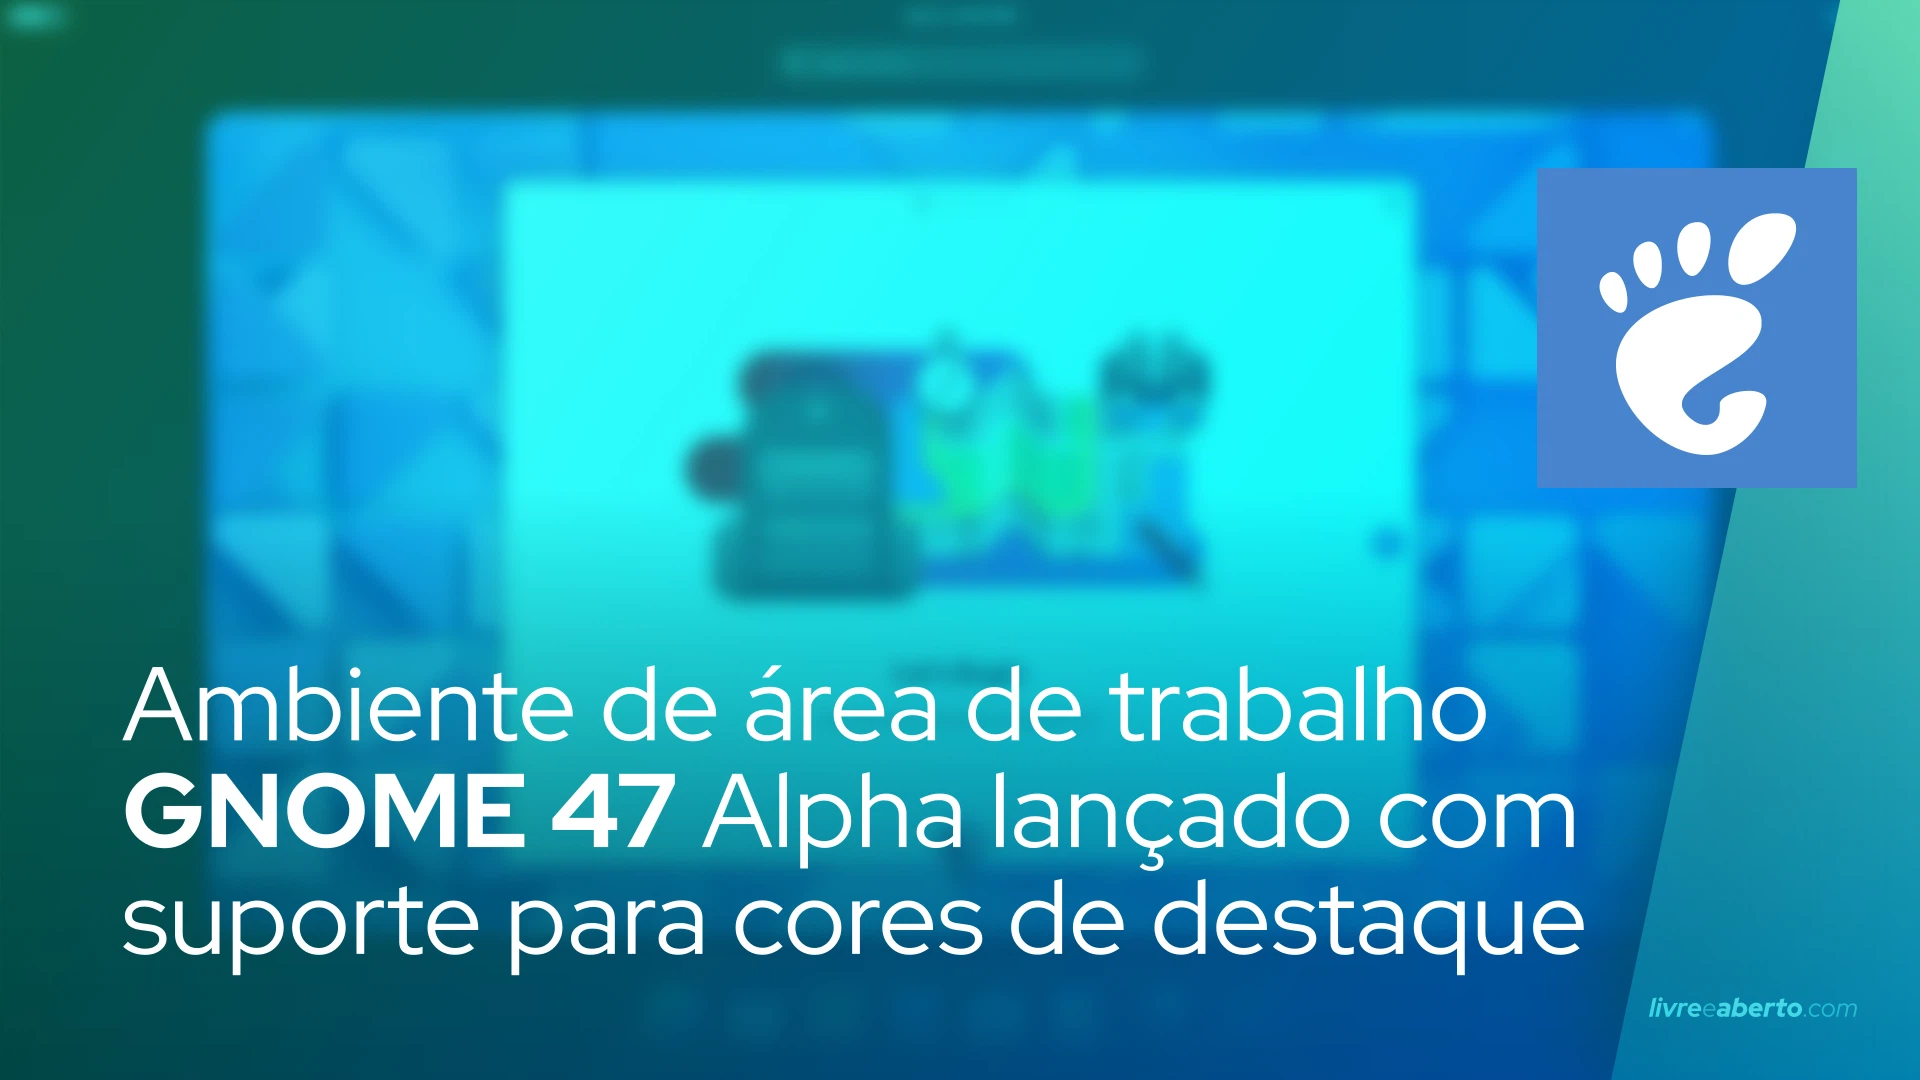 Ambiente de área de trabalho GNOME 47 Alpha lançado com suporte para cores de destaque